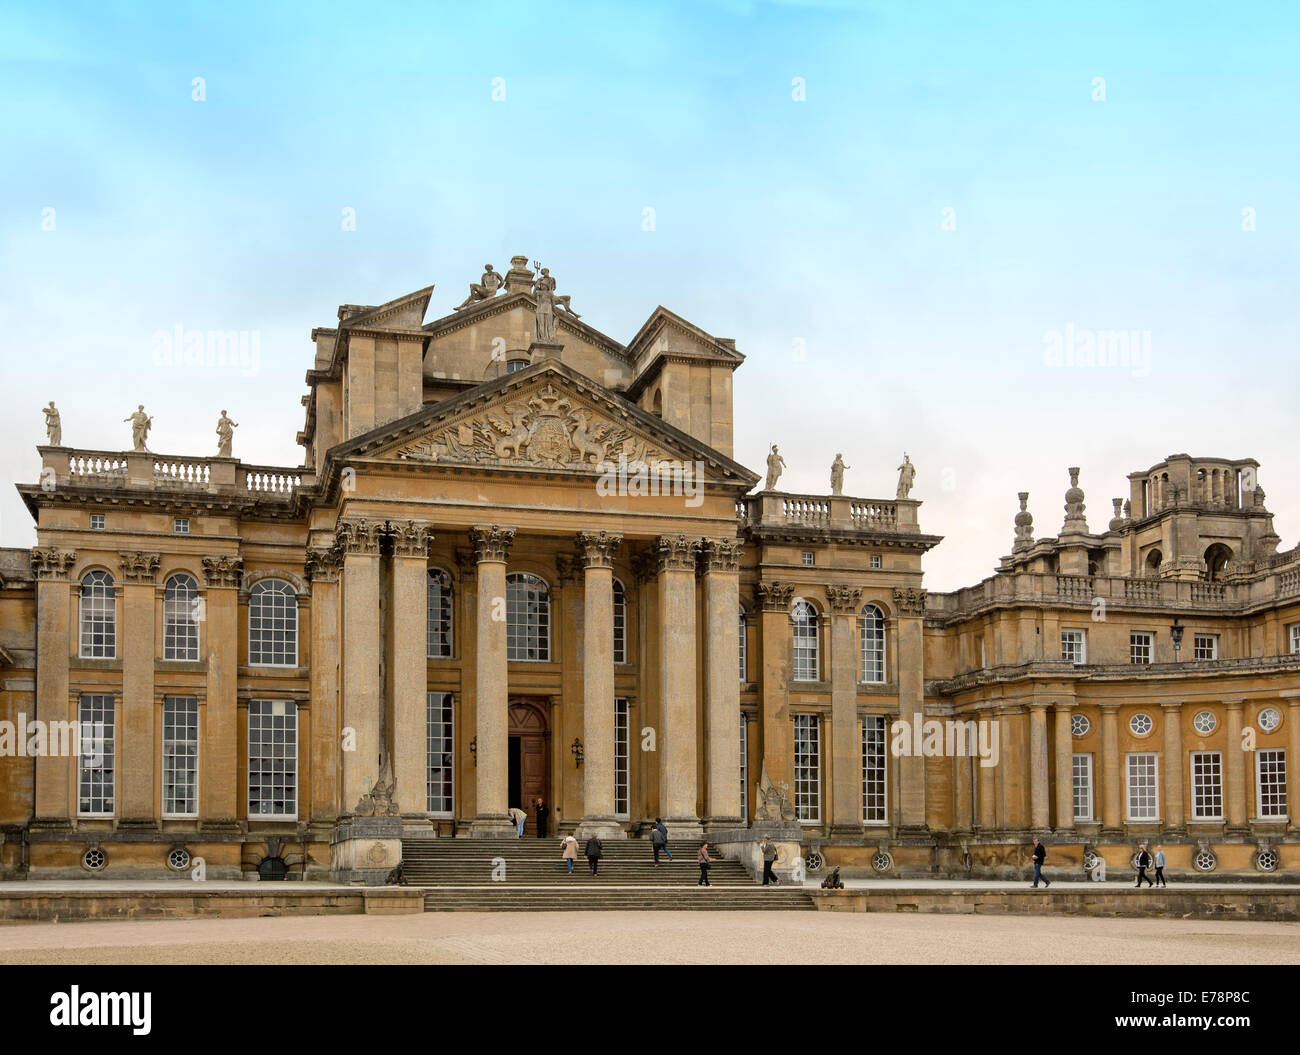 Vue avant de Blenheim Palace, l'immense patrimoine de l'UNESCO énumérés English 18e siècle demeure seigneuriale de style gothique under blue sky Banque D'Images